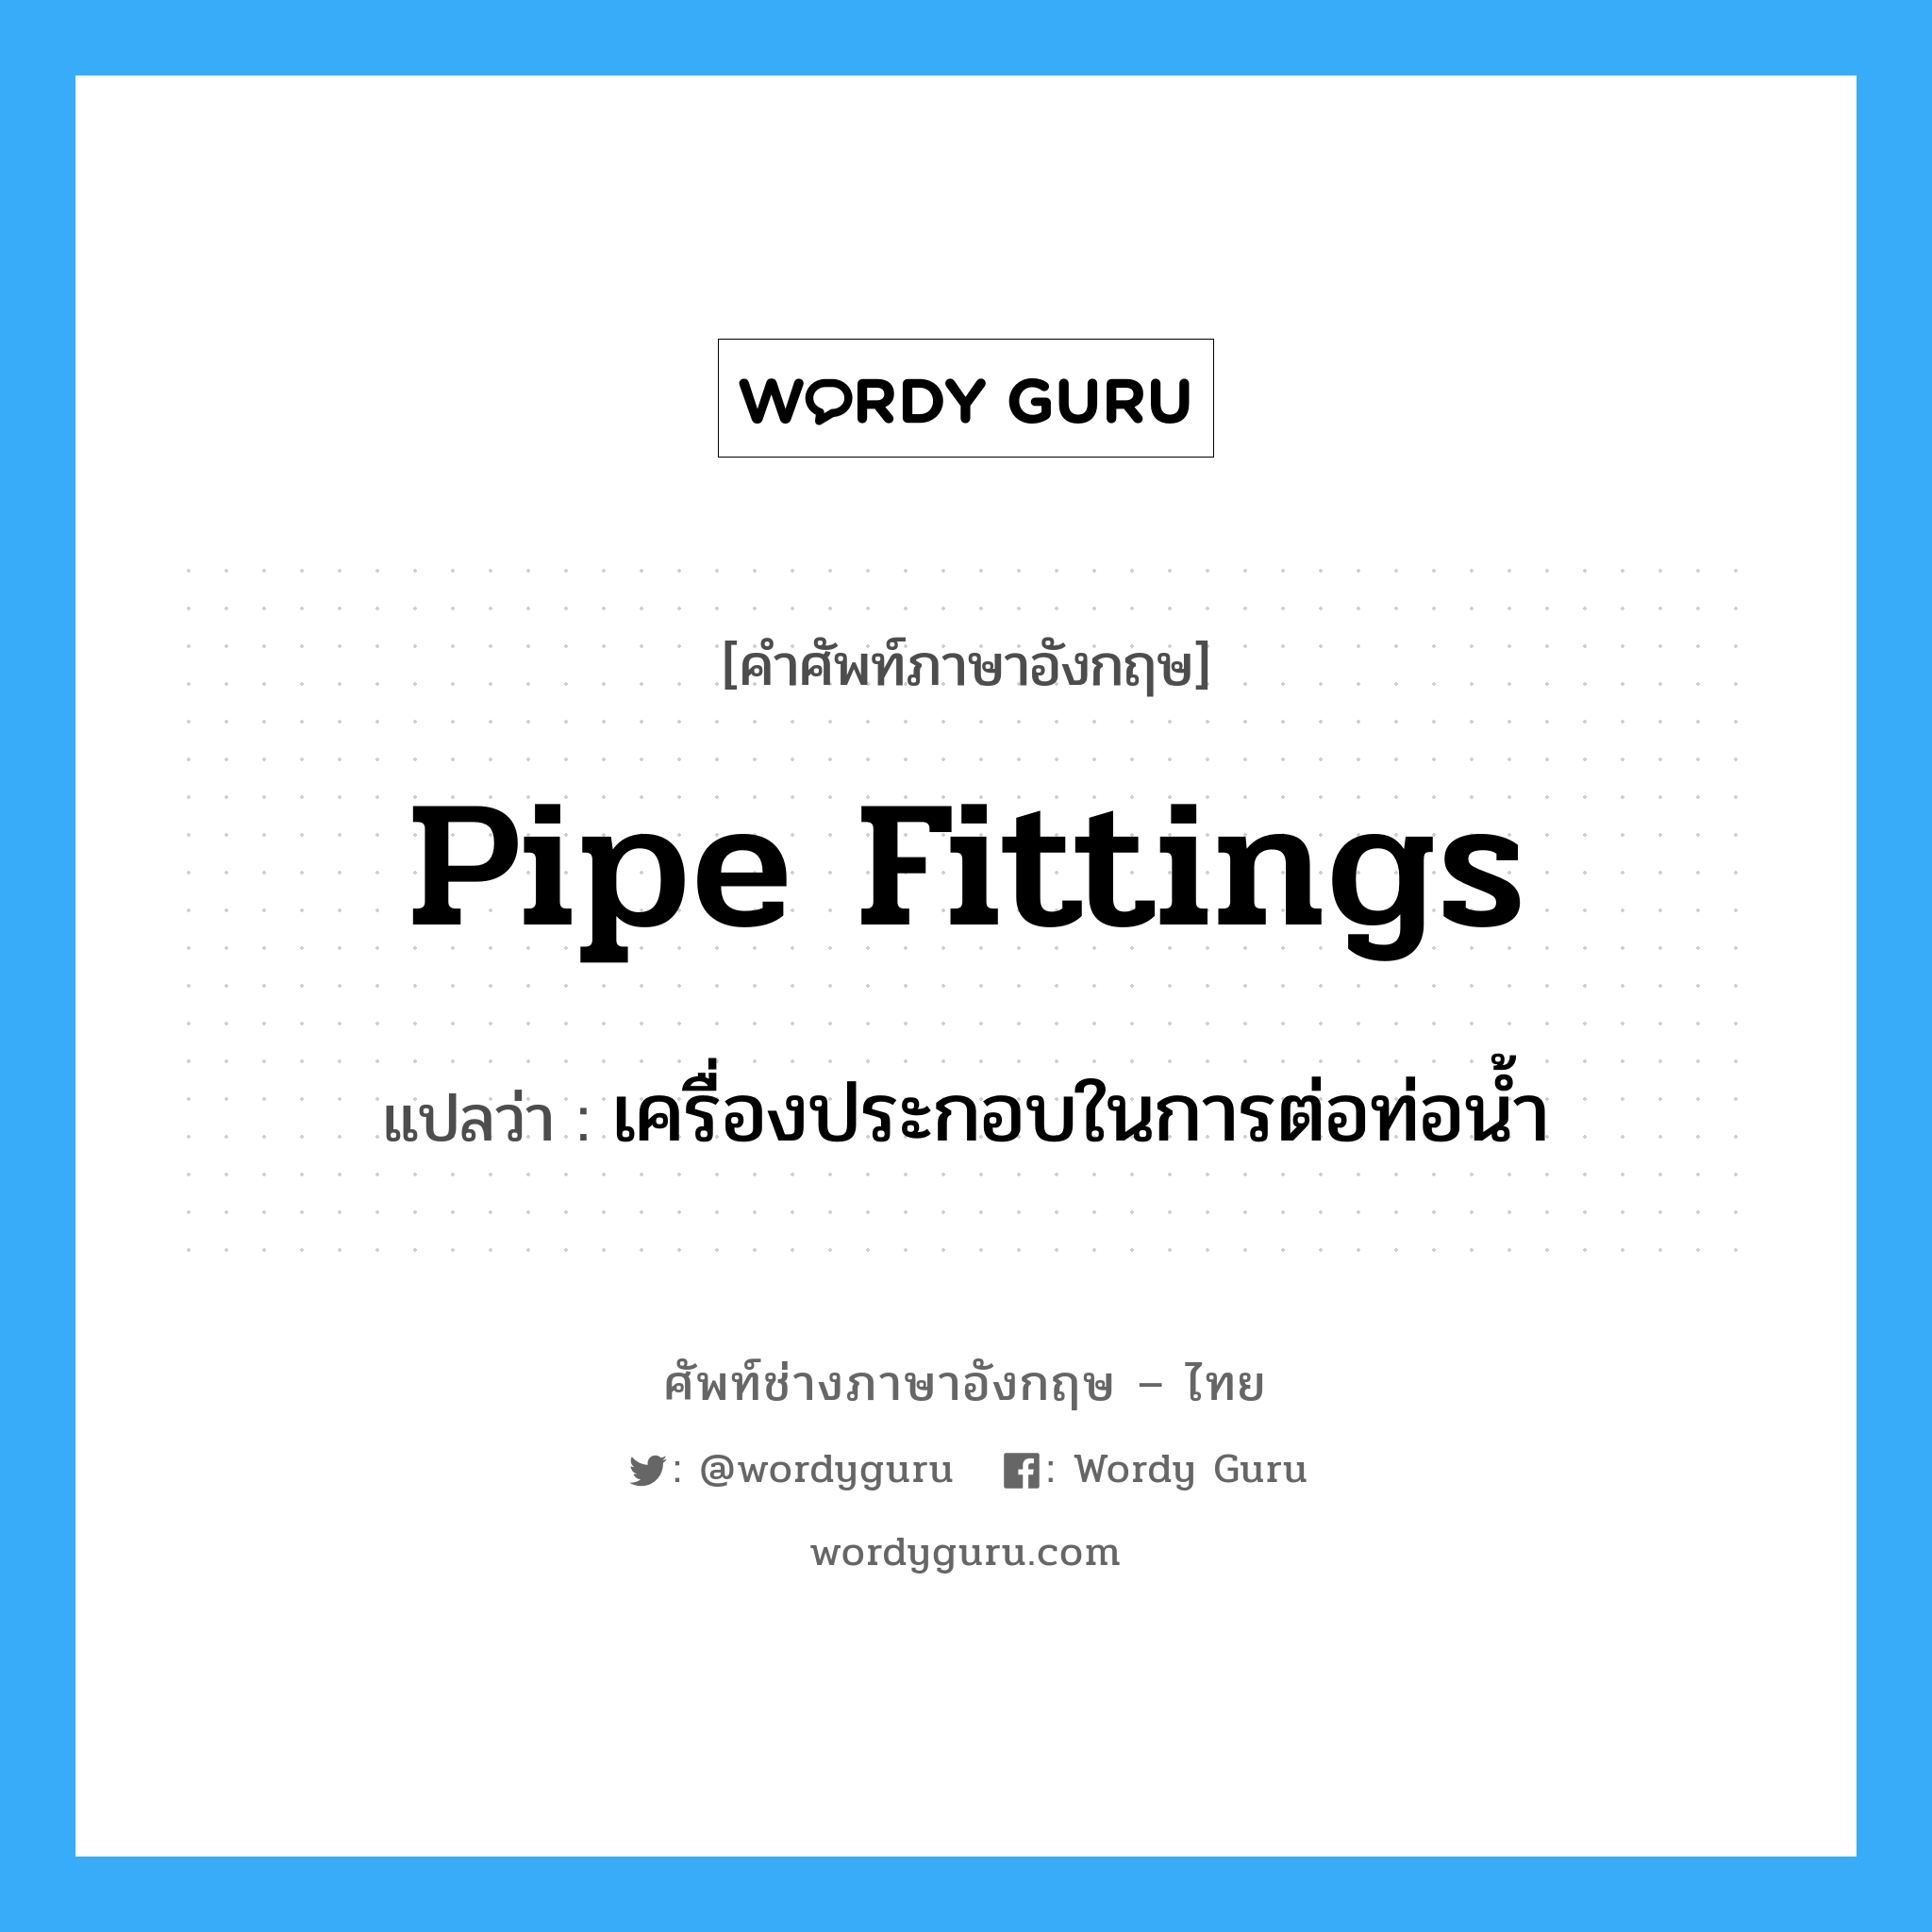 pipe fittings แปลว่า?, คำศัพท์ช่างภาษาอังกฤษ - ไทย pipe fittings คำศัพท์ภาษาอังกฤษ pipe fittings แปลว่า เครื่องประกอบในการต่อท่อน้ำ